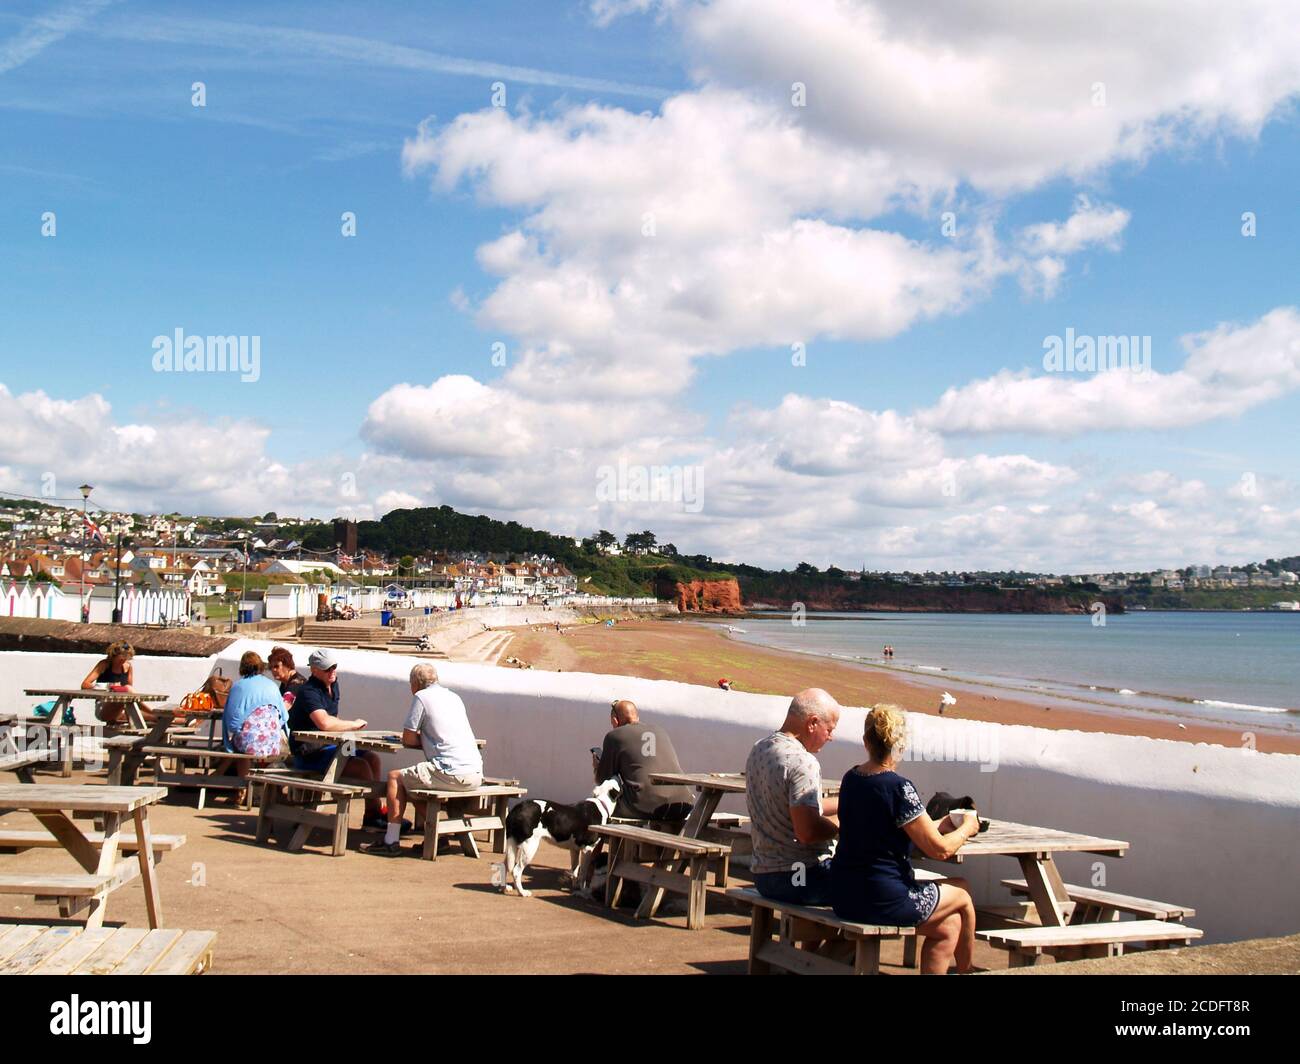 Les gens mangeant dehors avec la distanciation sociale étant observée regardant sur la plage de Preston Sands, Paignton, Torbay, sud-ouest de l'Angleterre. Banque D'Images